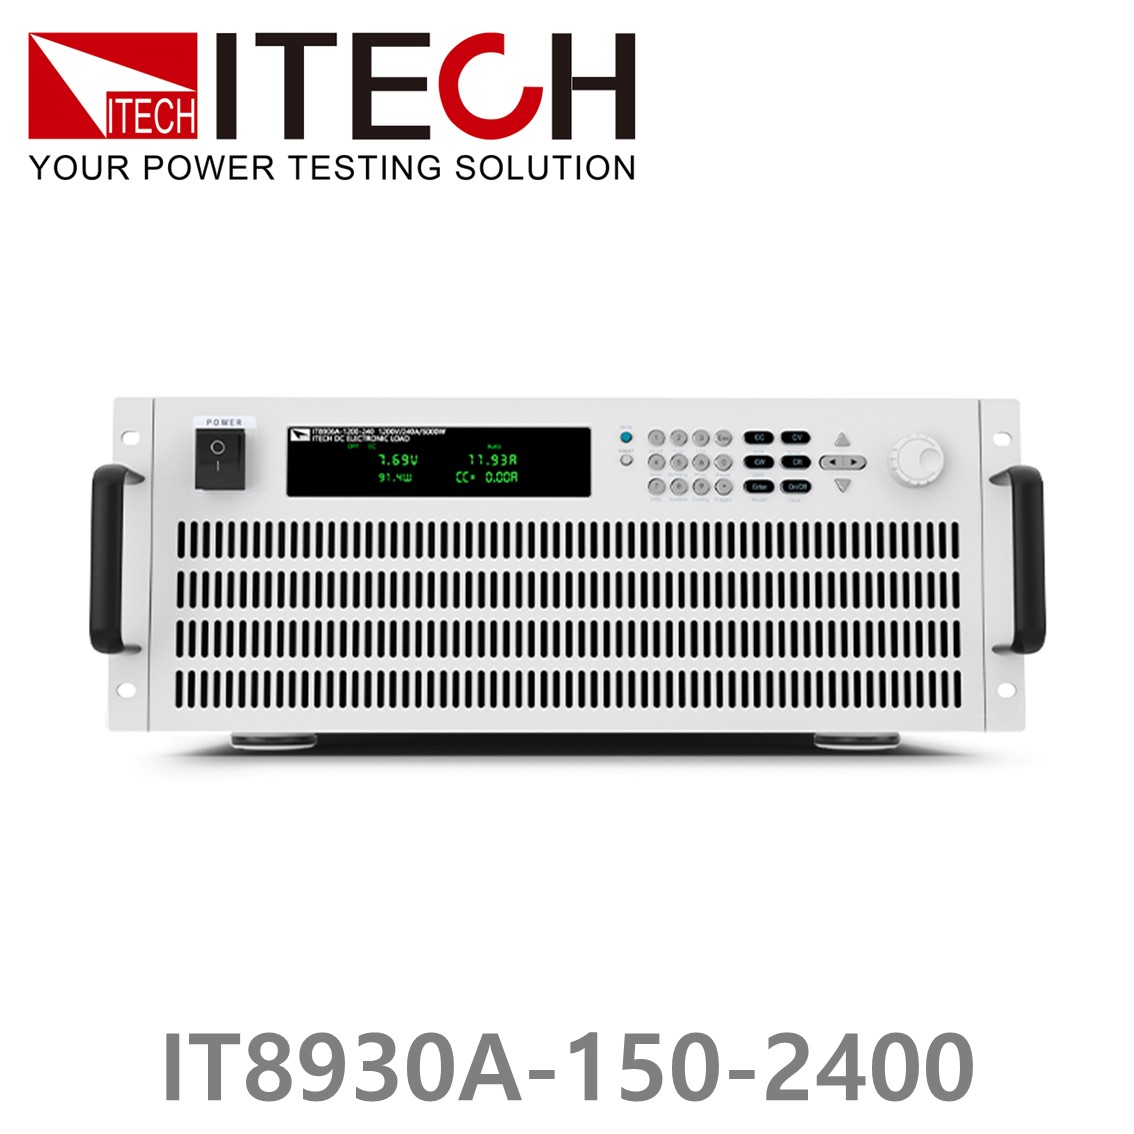 [ ITECH ] IT8930A-150-2400  고성능 고전력 DC 전자로드 150V/2400A/30kW (27U)